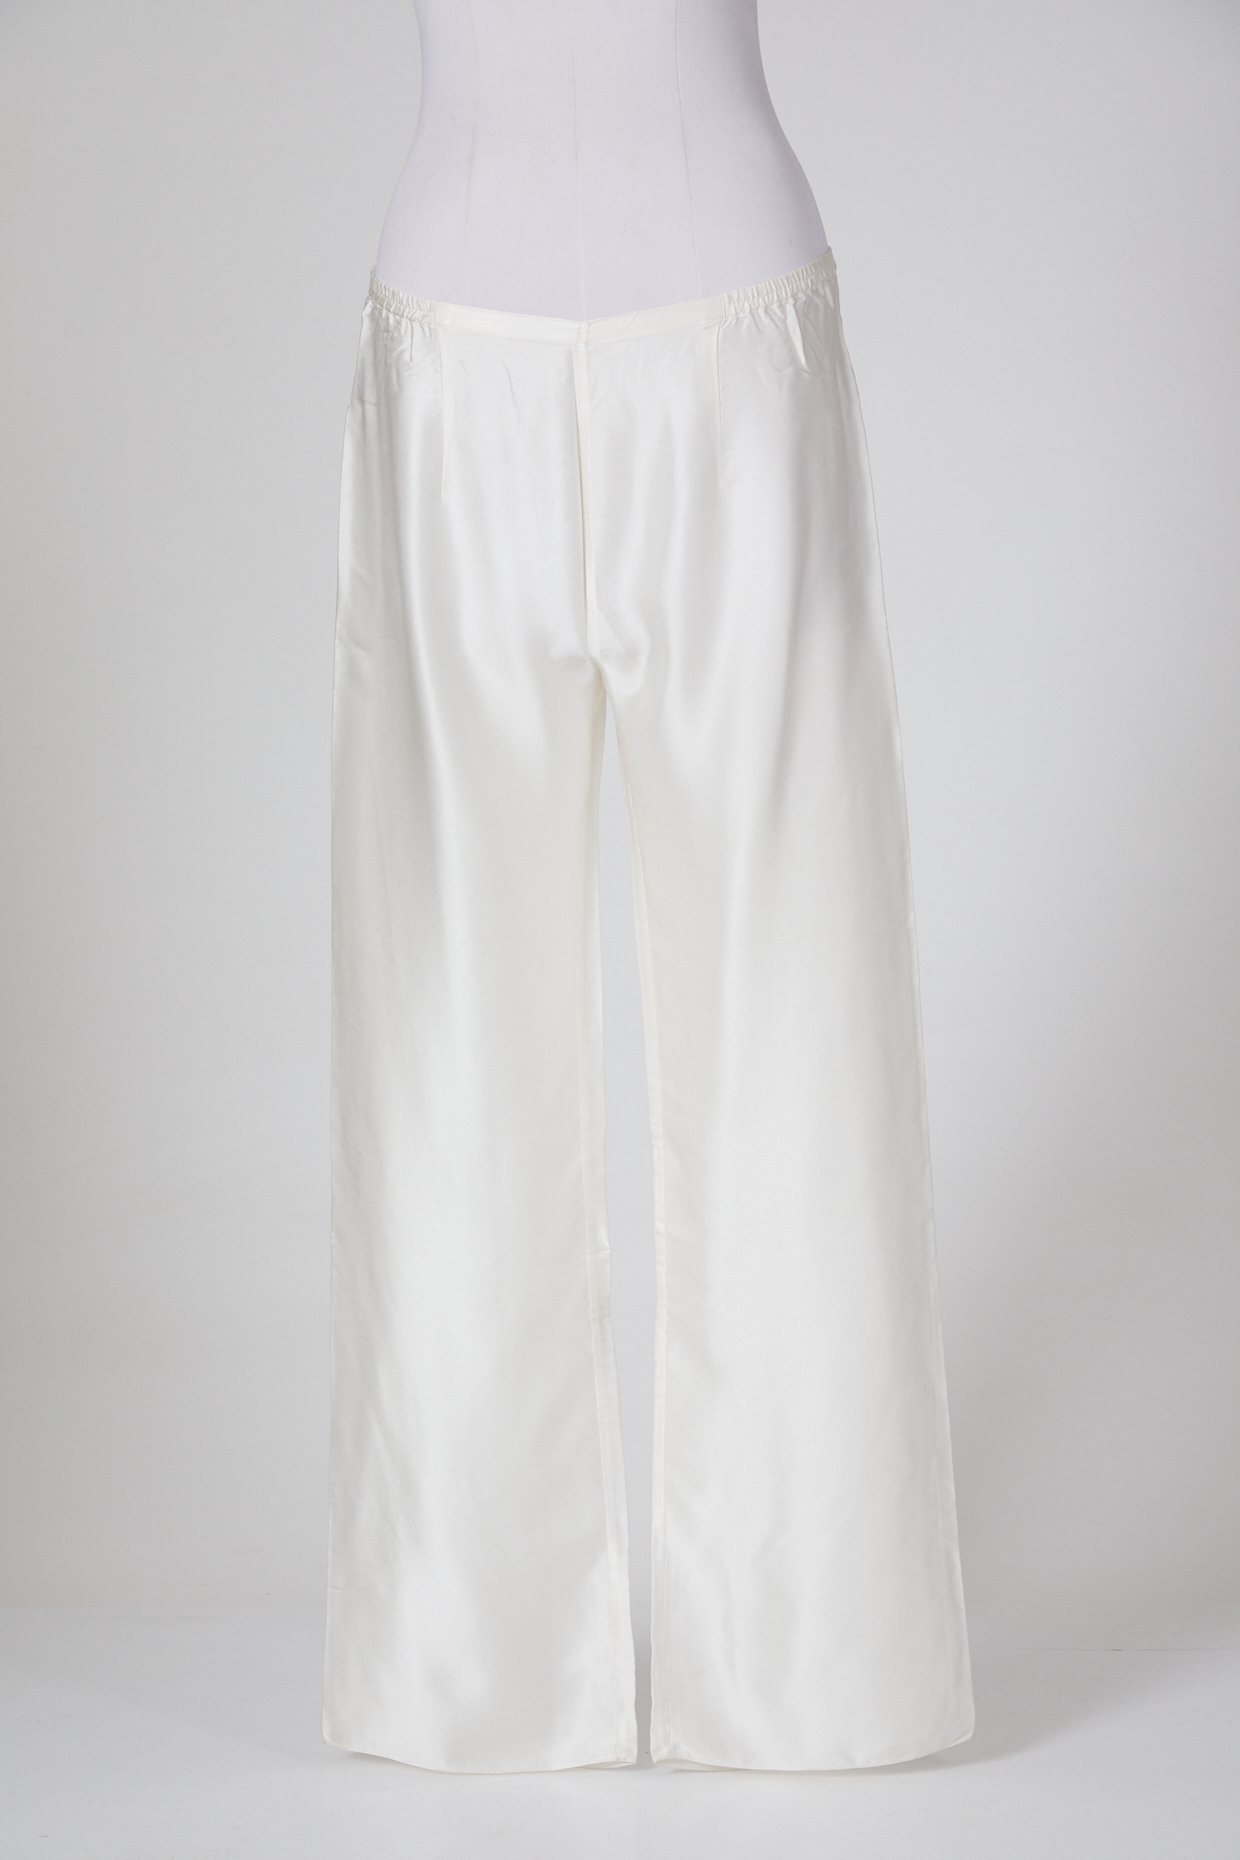 Polo Ralph Lauren White Satin Wide Leg Pants, Brand Size 2 211793231001 -  Apparel - Jomashop